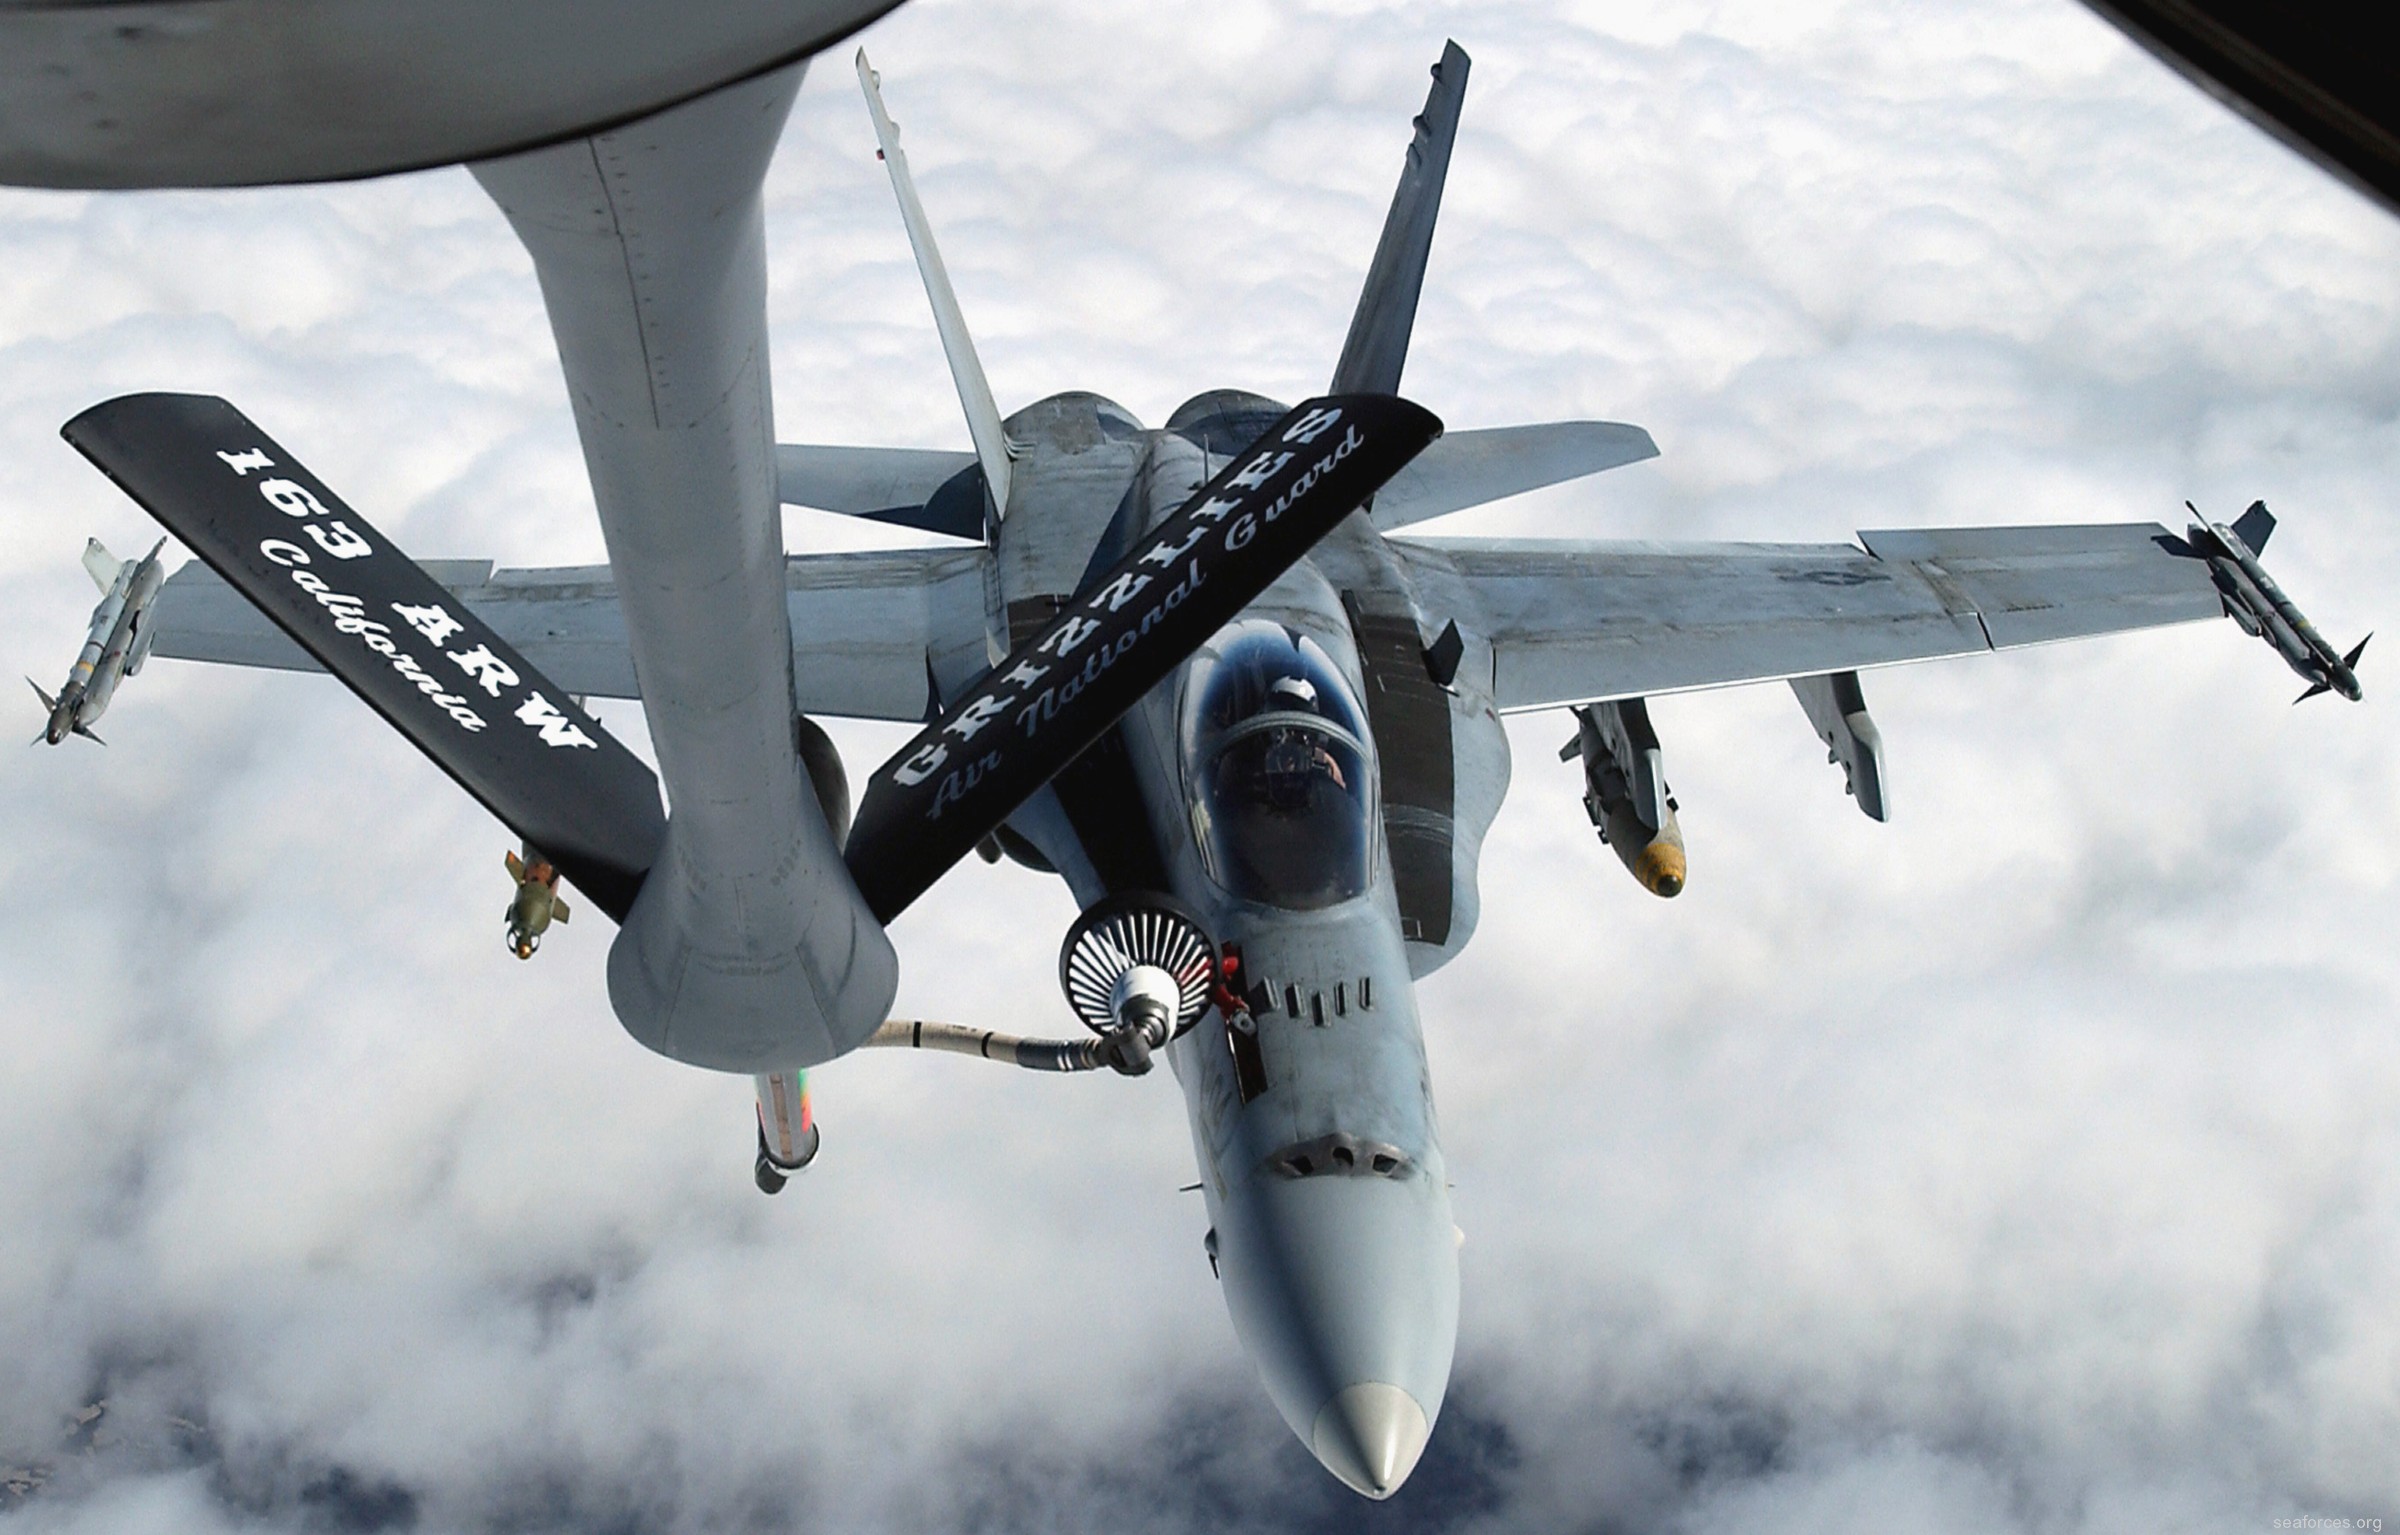 vmfa-115 silver eagles marine fighter attack squadron f/a-18a+ hornet 166